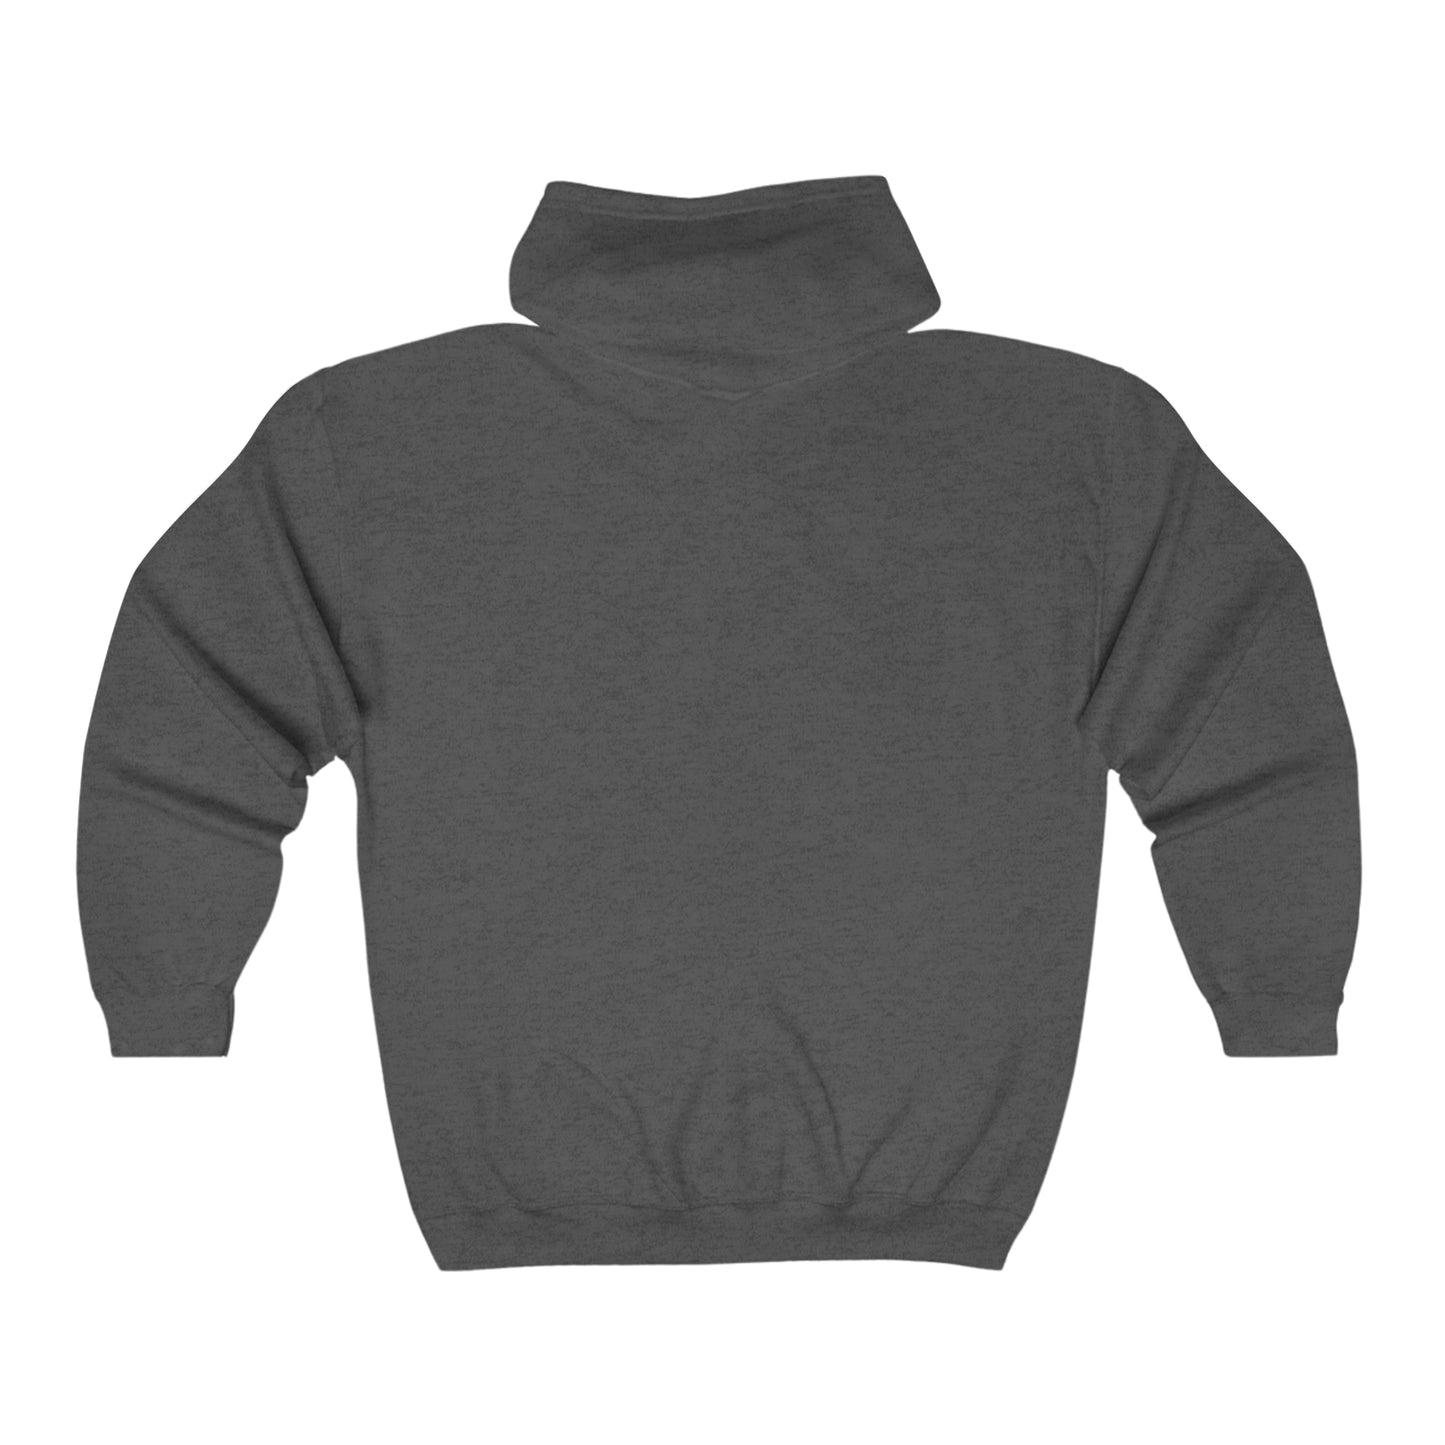 Skull zip up Unisex Heavy Blend Full Zip Hooded Sweatshirt hoodie Trippy Watercolor Long Sleeve Tee, Dripping AI Made Design Dark Style Edgy